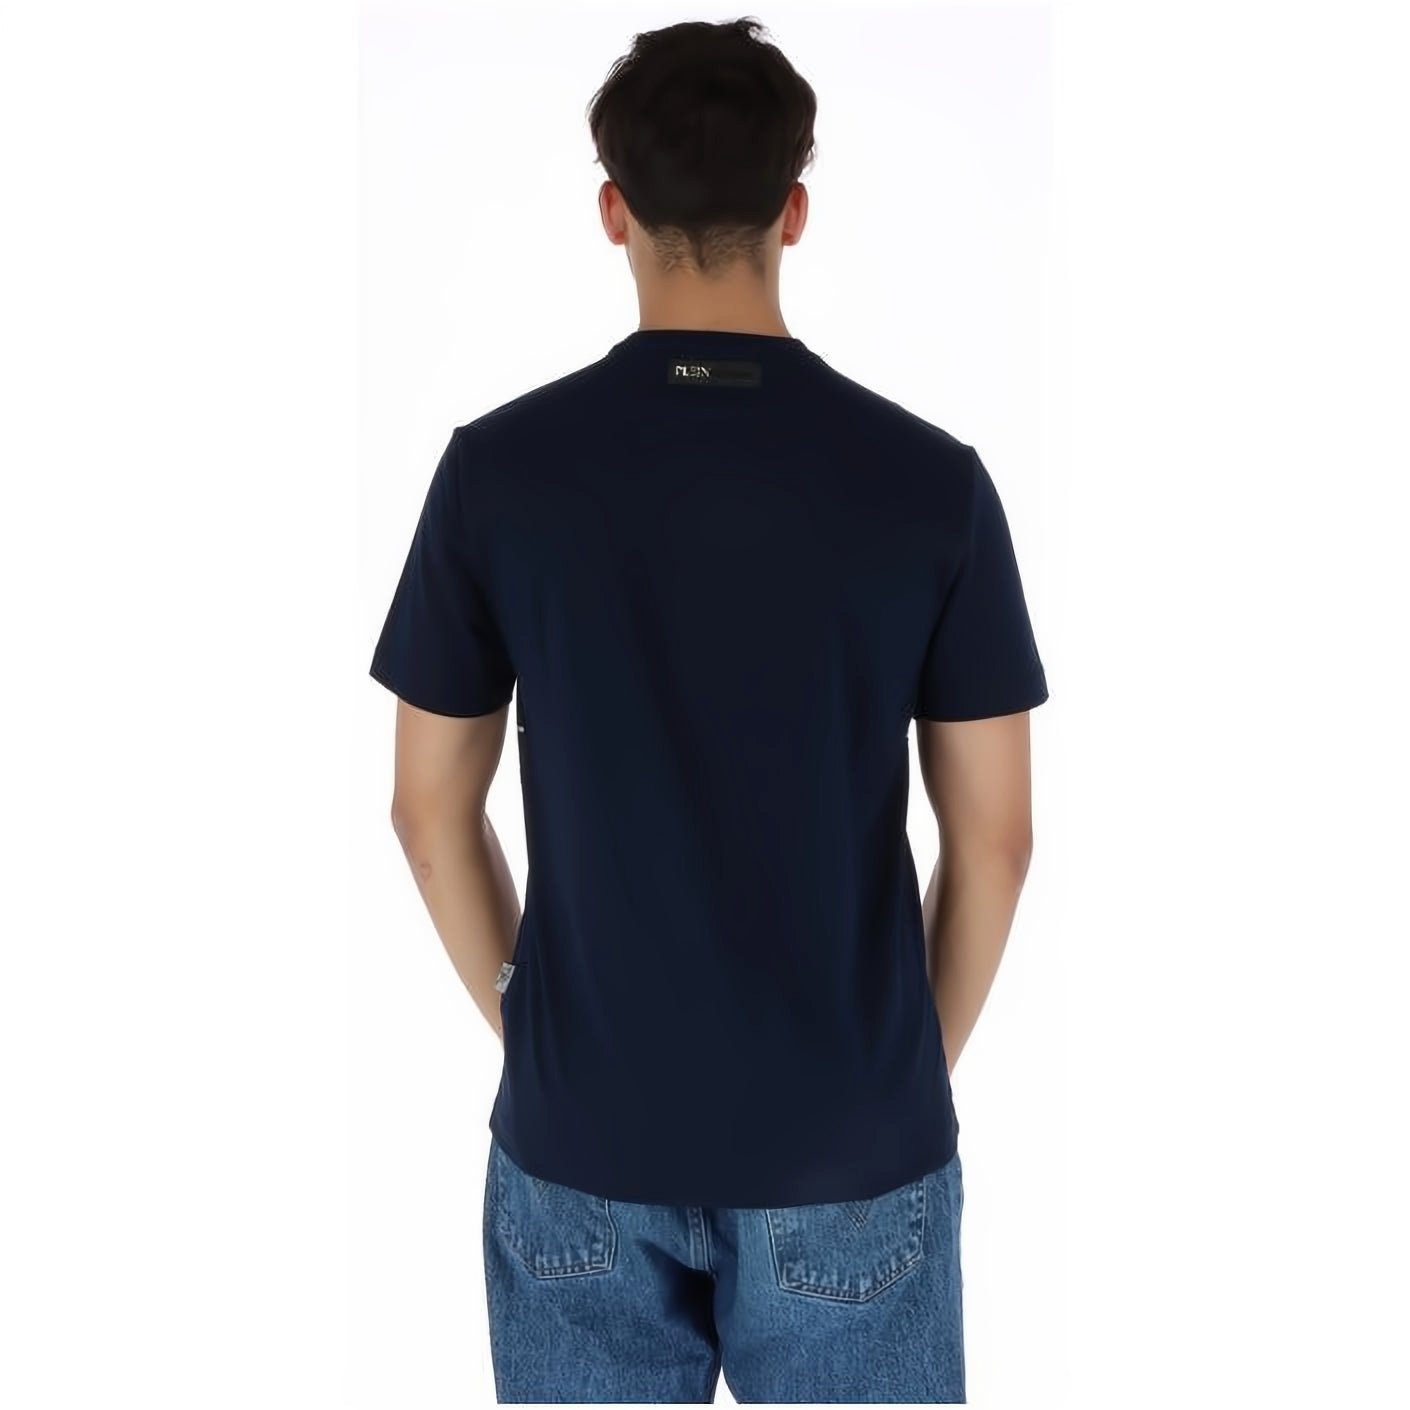 PLEIN SPORT T-Shirt ROUND Farbauswahl hoher Tragekomfort, Look, NECK Stylischer vielfältige